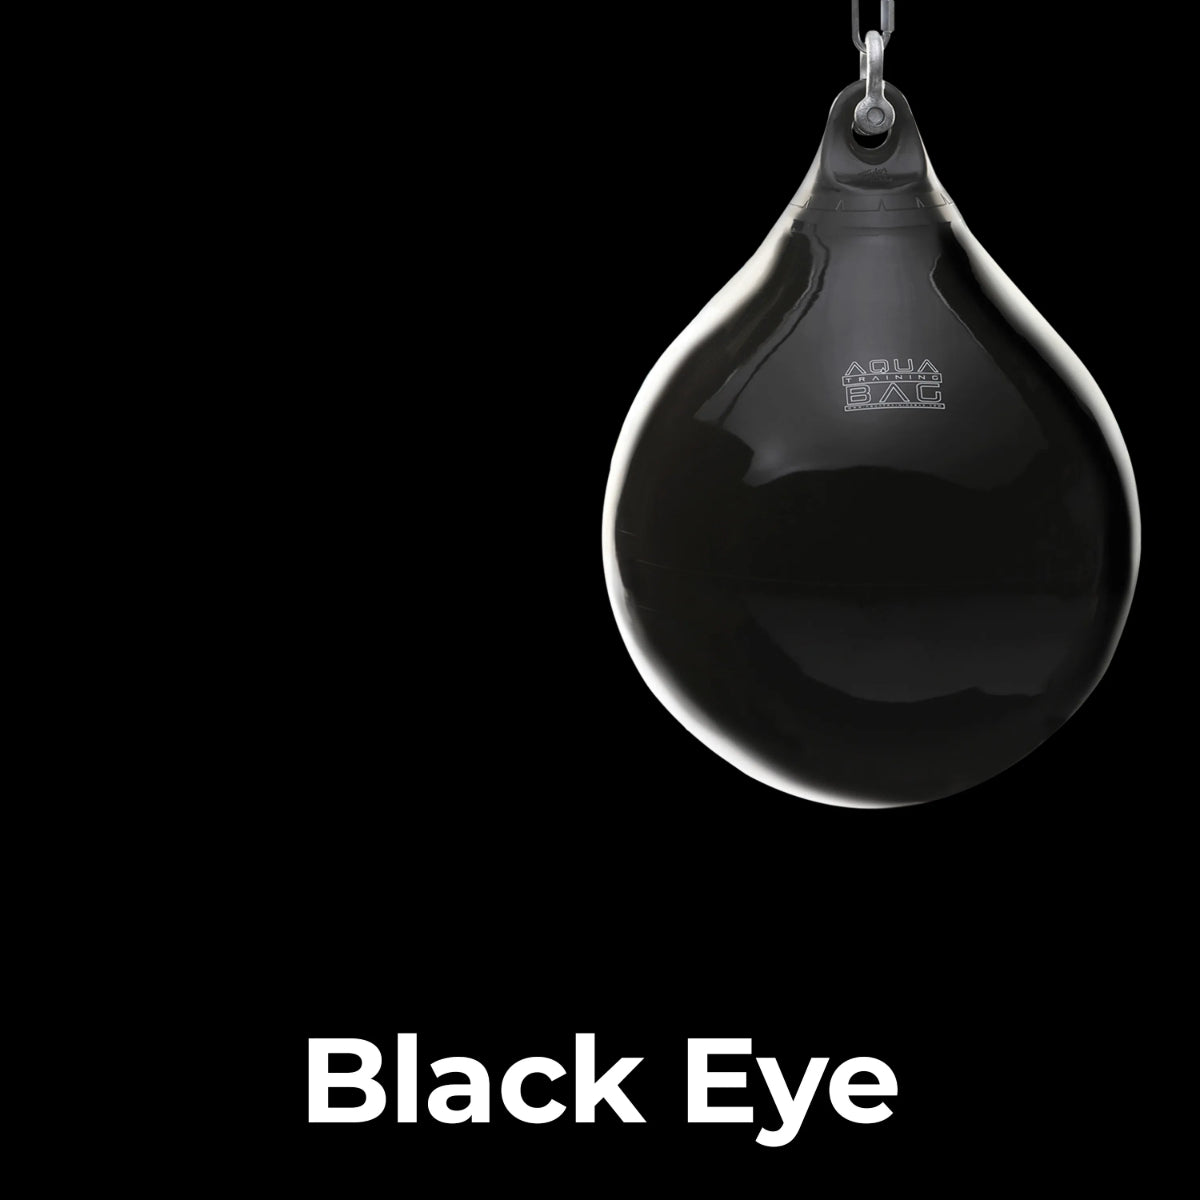 Bolsa de entrenamiento Aqua Headhunter 9" - Black Eye